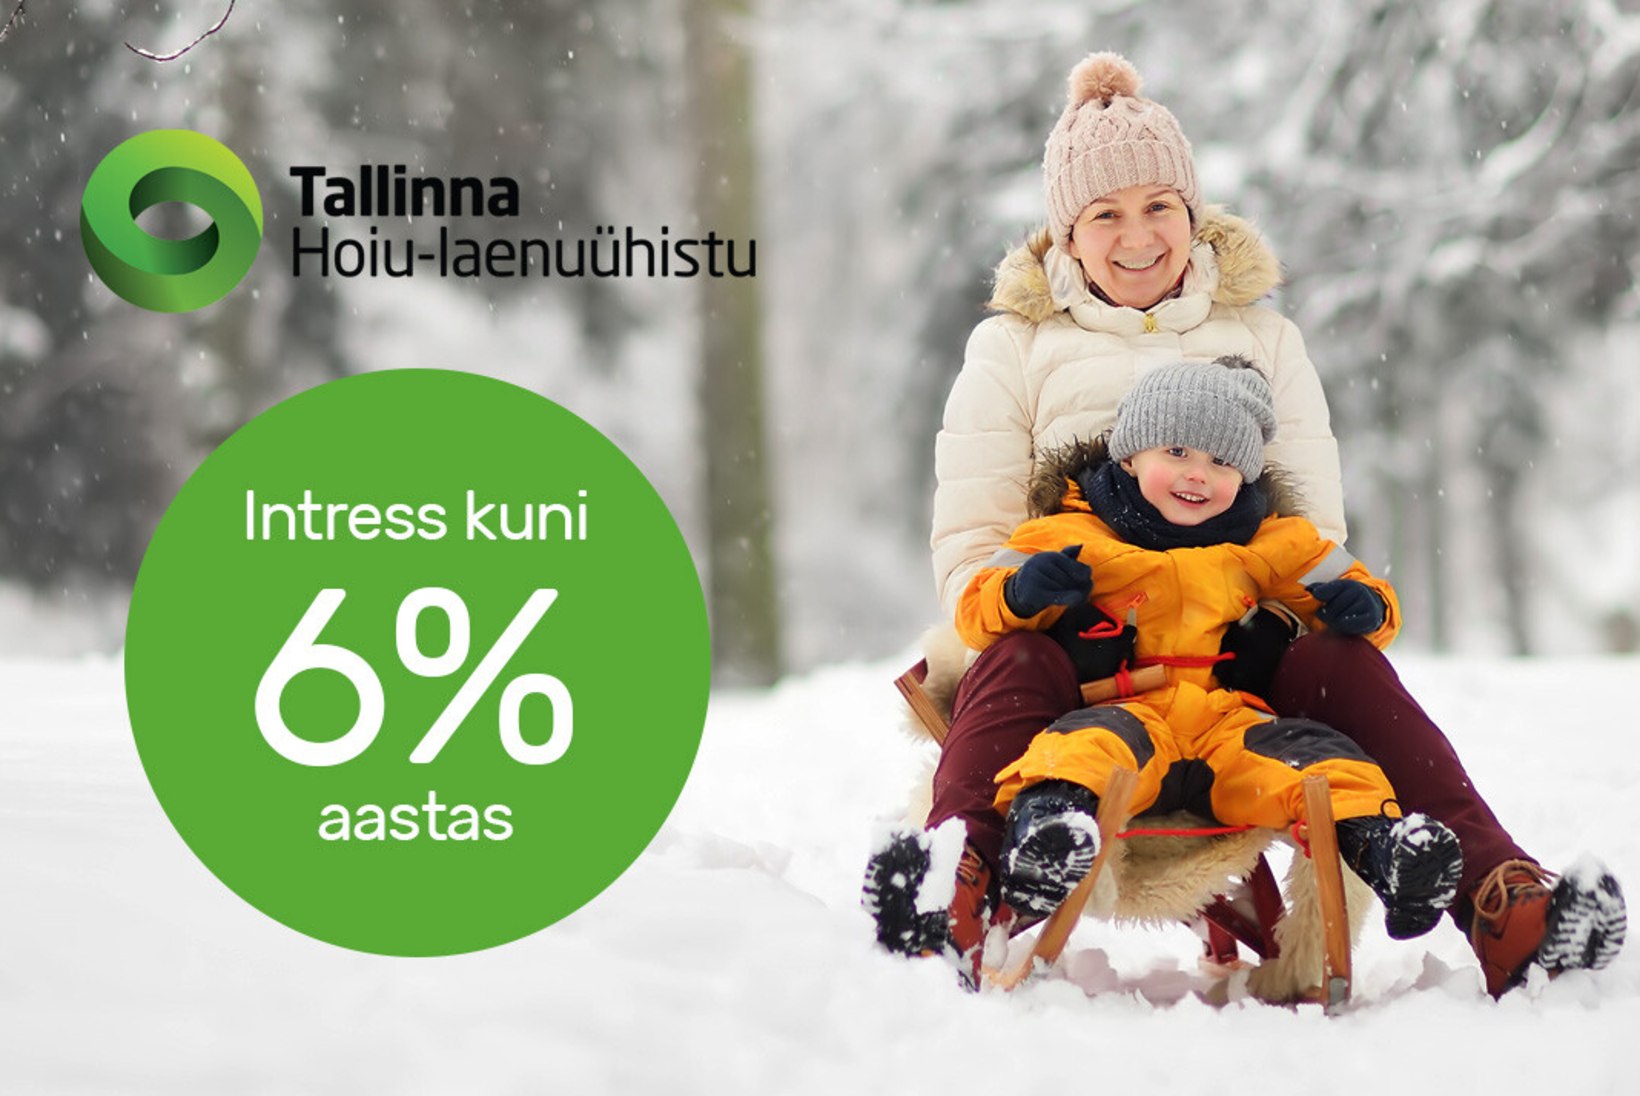 Tallinna Hoiu-laenuühistu – Teie raha turvasadam!